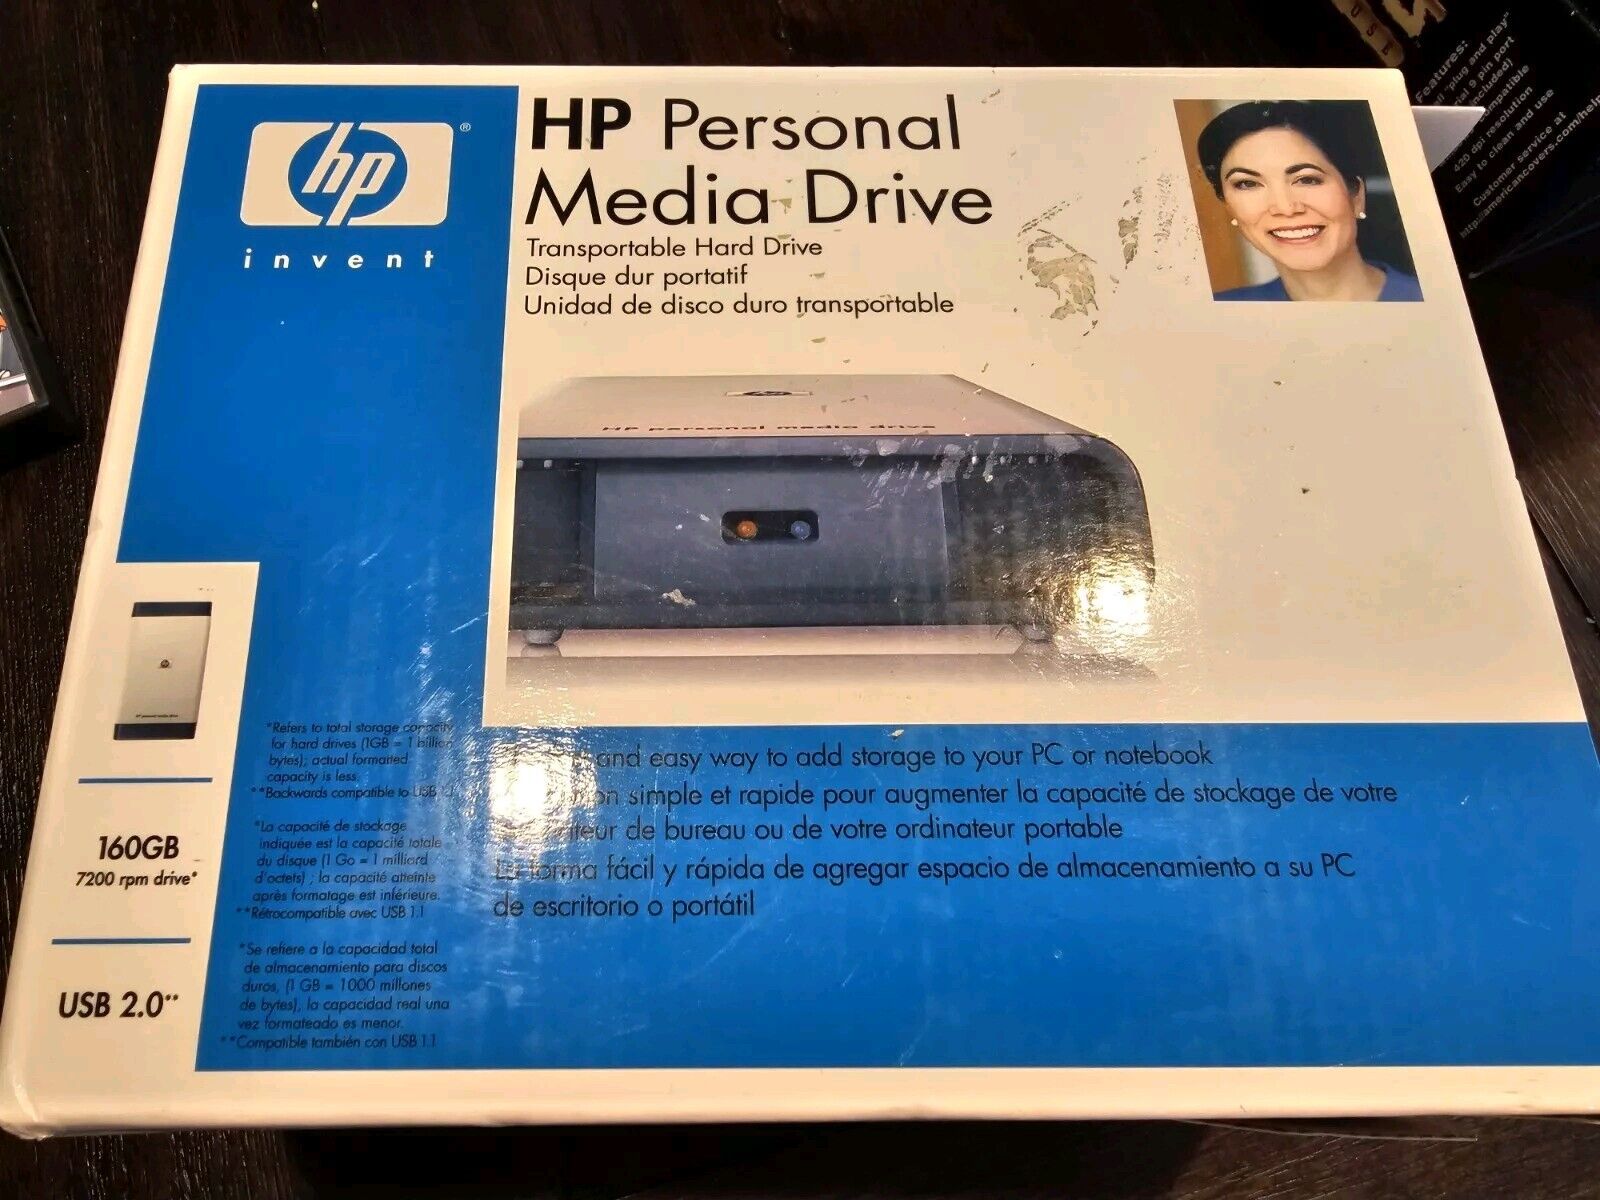 HP Personal Media Drive 160GB Model Hd1600s External Hard Drive HD 